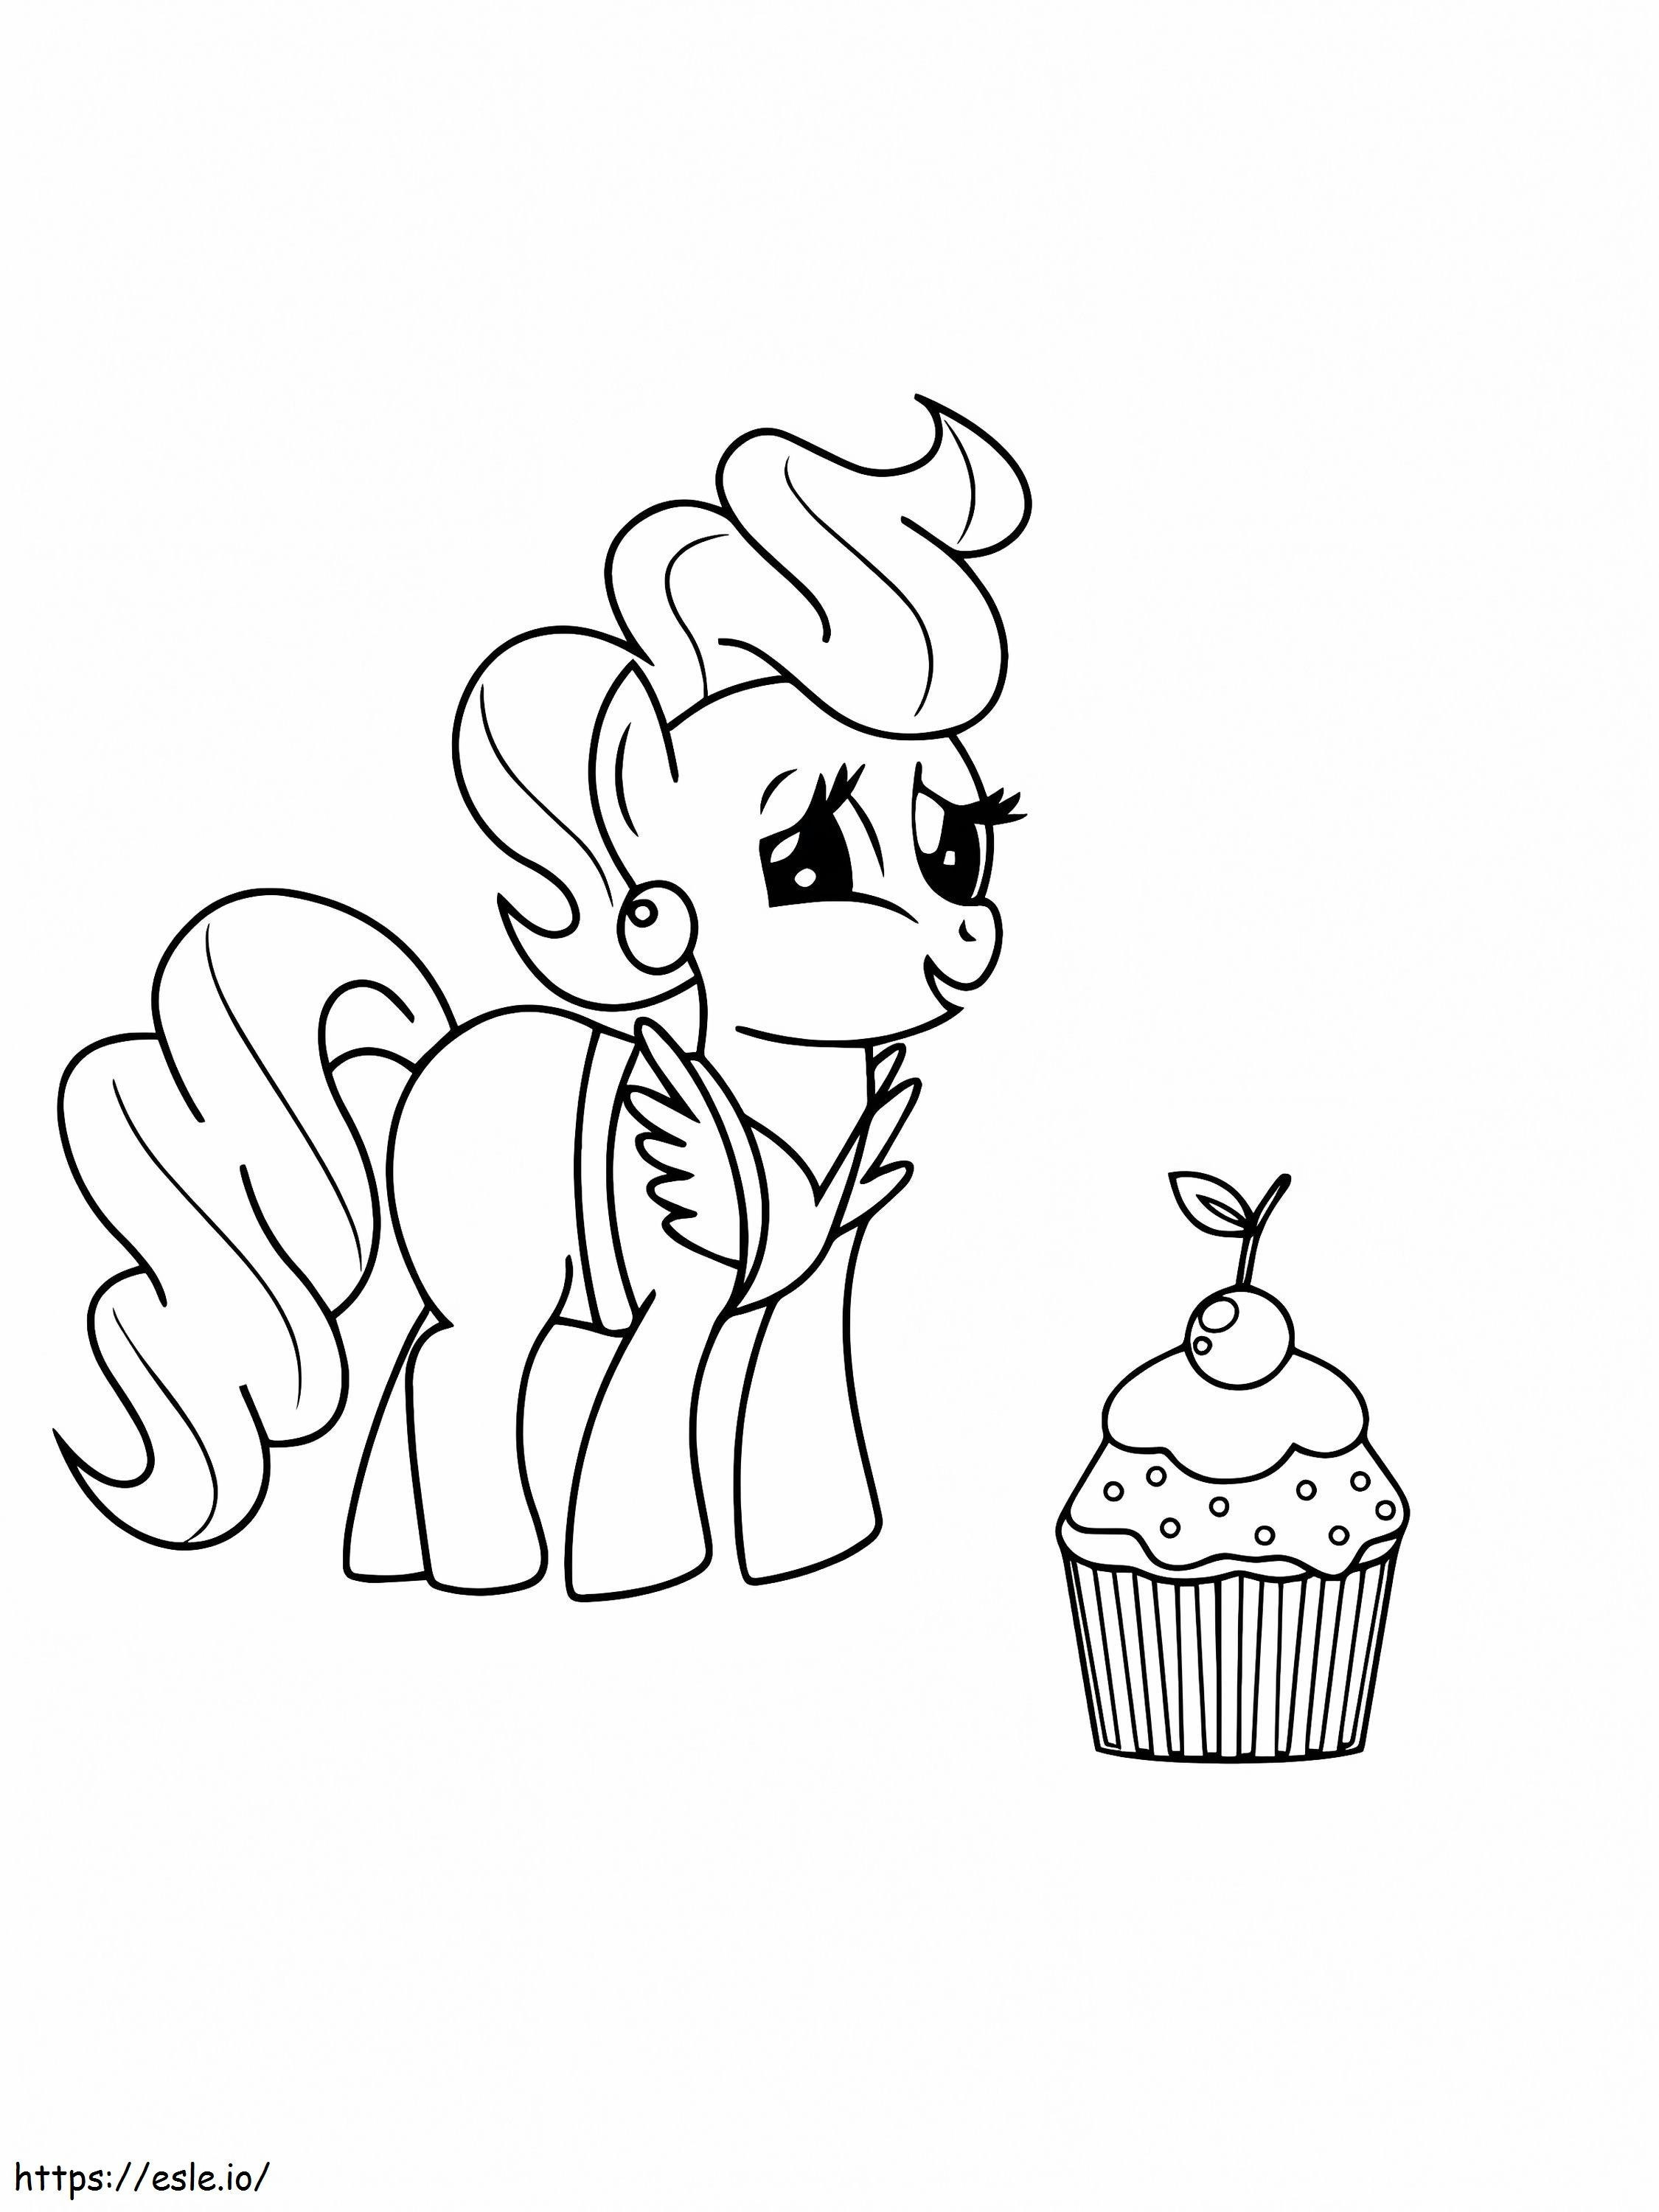 Delizioso cupcake e torta della signora di My Little Pony da colorare